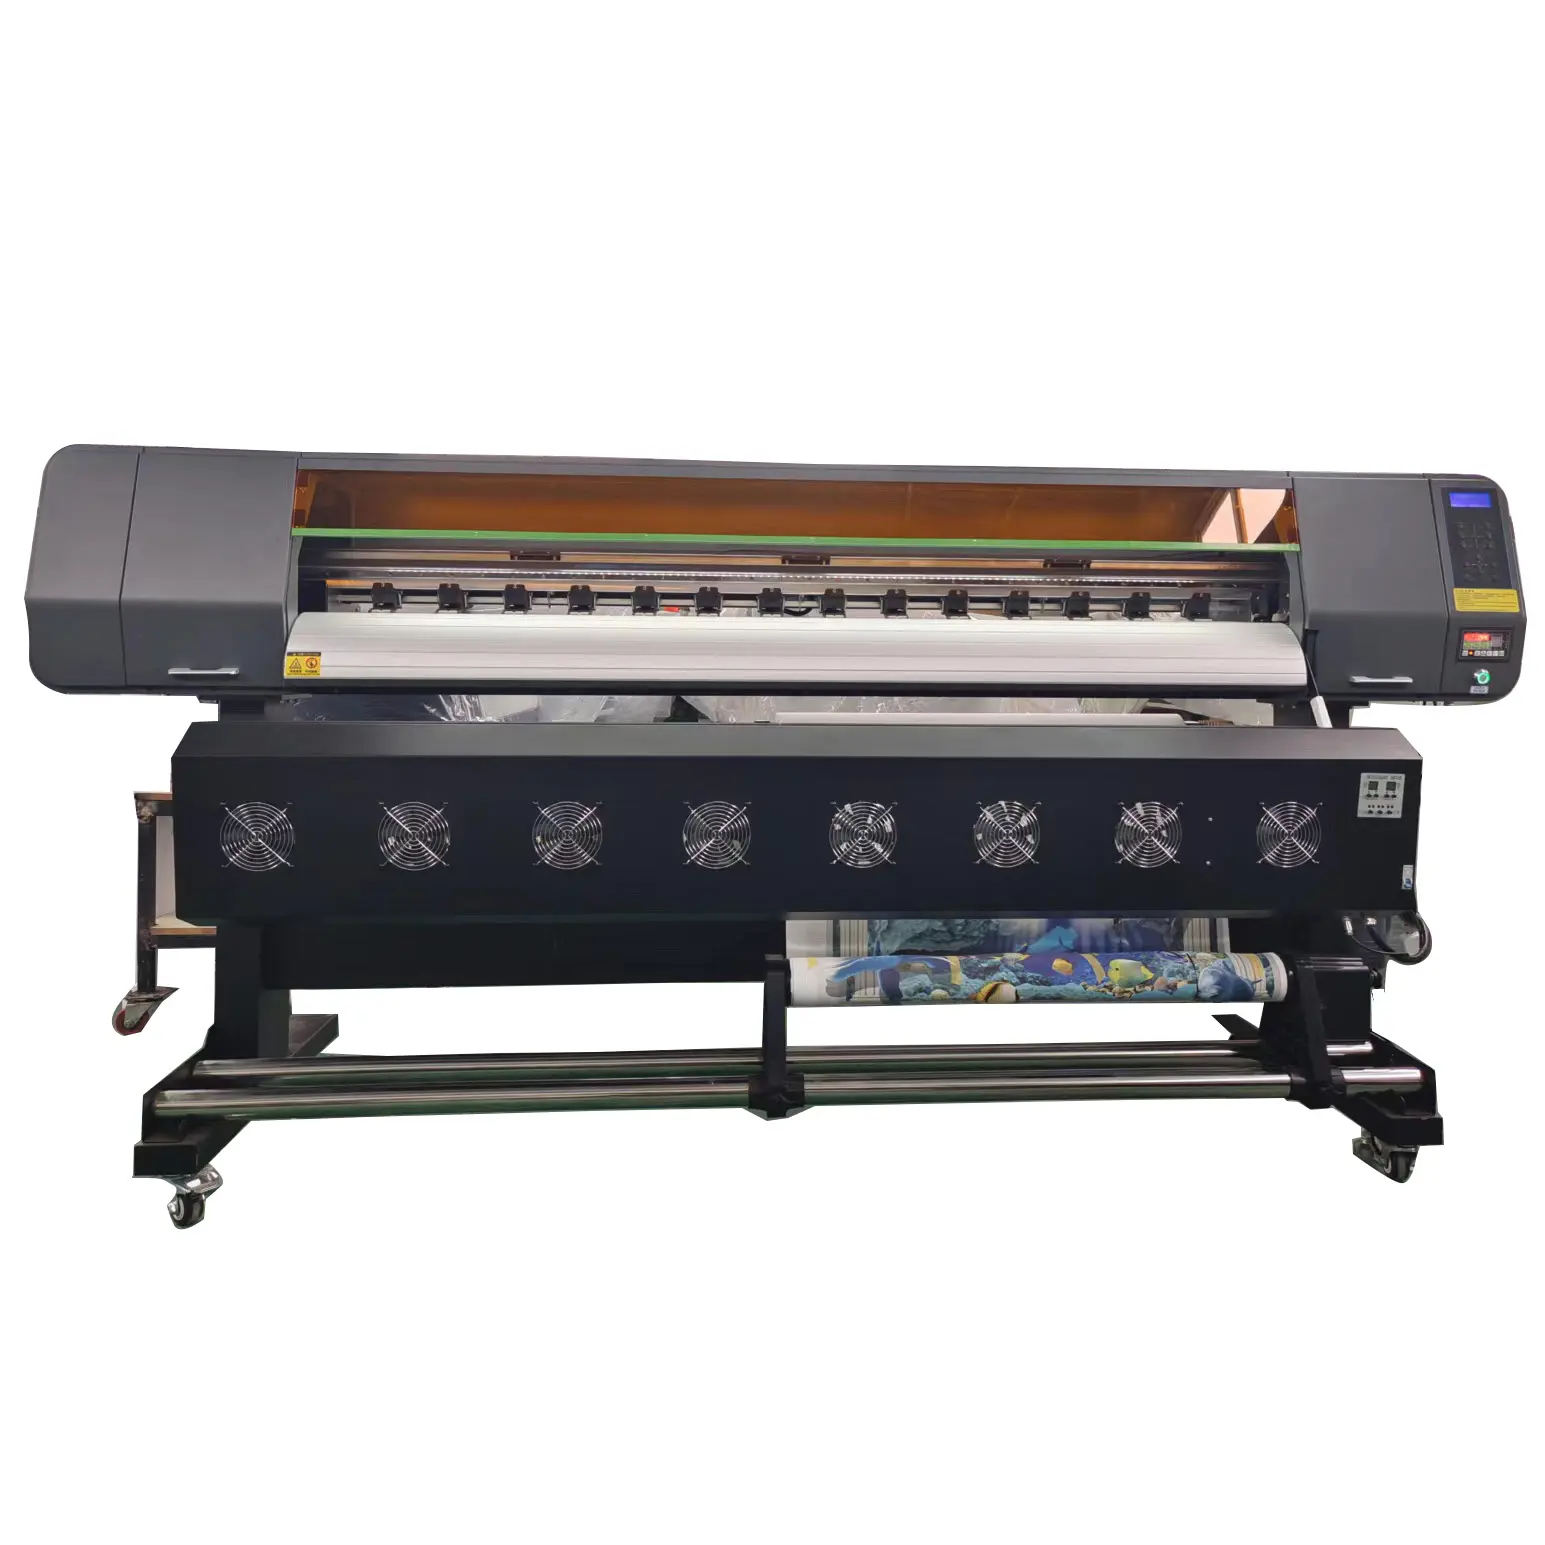 Impressora para impressora de bandeira, alta qualidade, 6ft, ninja impressora i3200, máquina de impressão cabeça com tinta